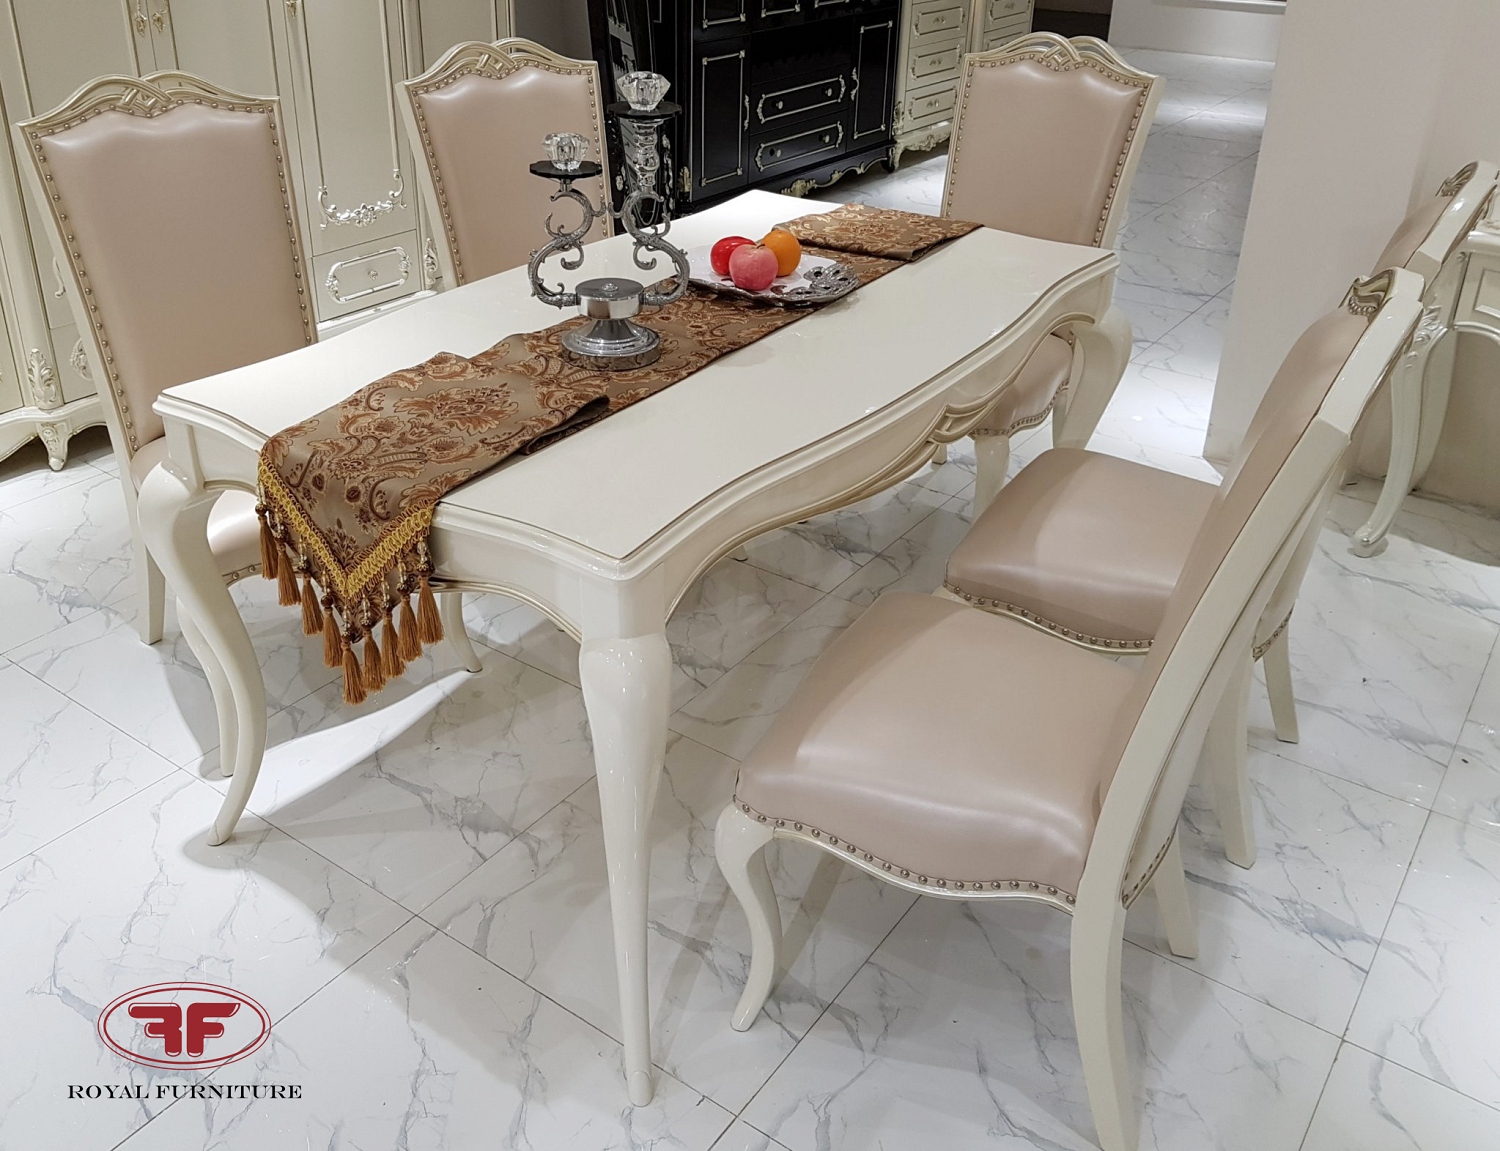 Bộ bàn ghế ăn gỗ tự nhiên màu trắng Tân Cổ Điển phong cách Ý nhập khẩu trở nên phổ biến hơn trong suốt những năm qua. Sự độc đáo và tinh tế của bộ bàn ghế này mang lại một cảm giác sang trọng và hiện đại cho căn phòng ăn của bạn. Nó sẽ tạo ra một không gian ấm cúng cho bữa ăn gia đình thường ngày của bạn.